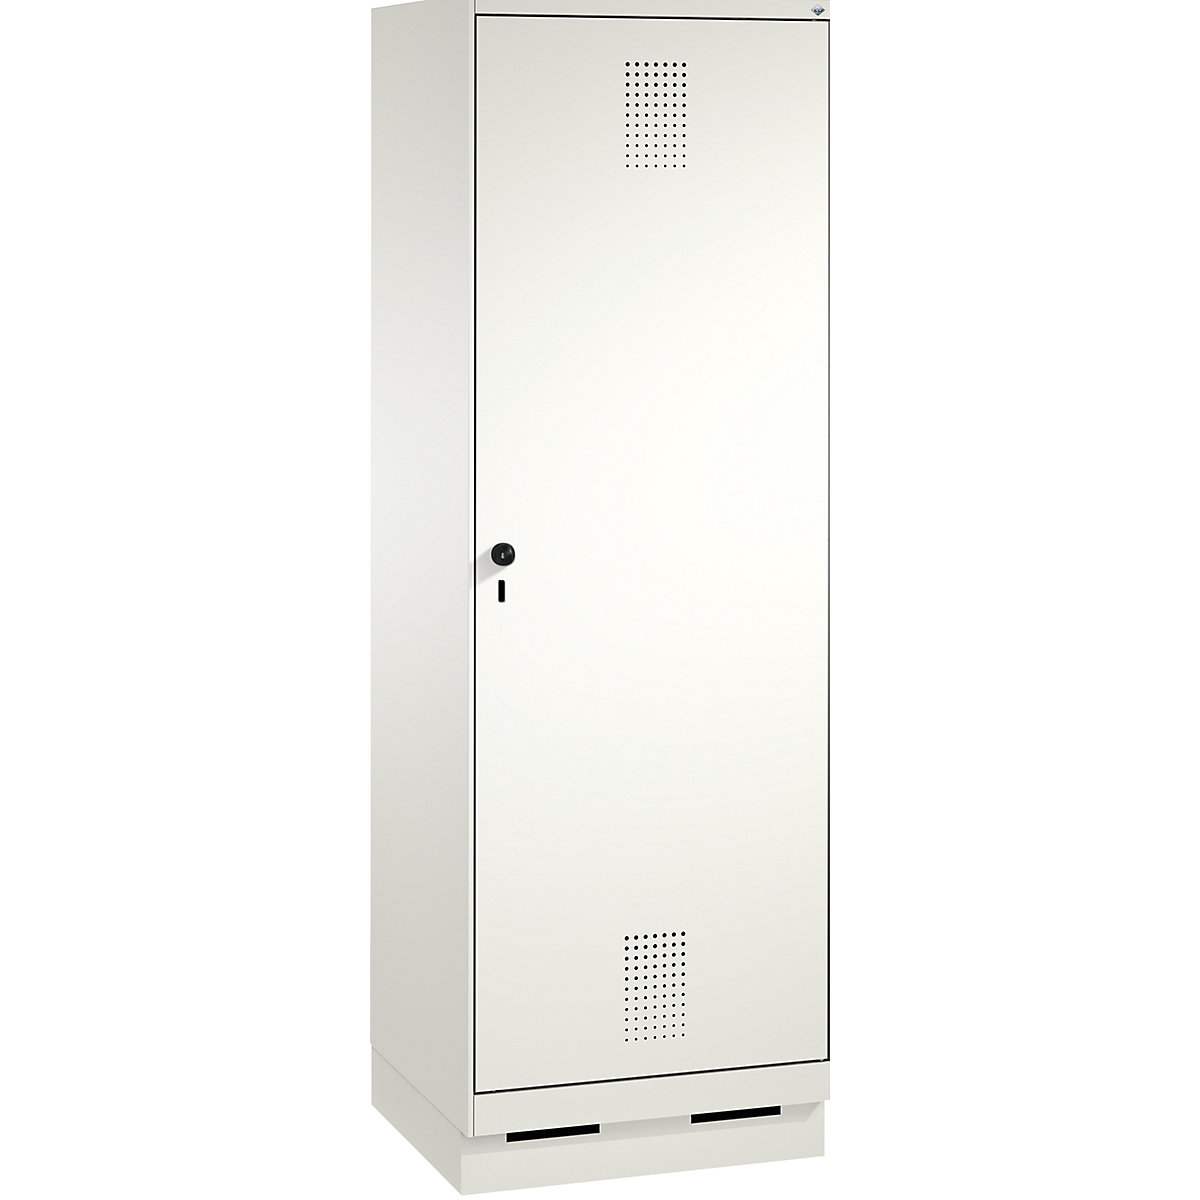 Garderobna omara EVOLO, vrata čez 2 predelka, s podnožjem – C+P, 2 razdelka, 1 vrata, širina razdelka 300 mm, prometno bele / prometno bele barve-3